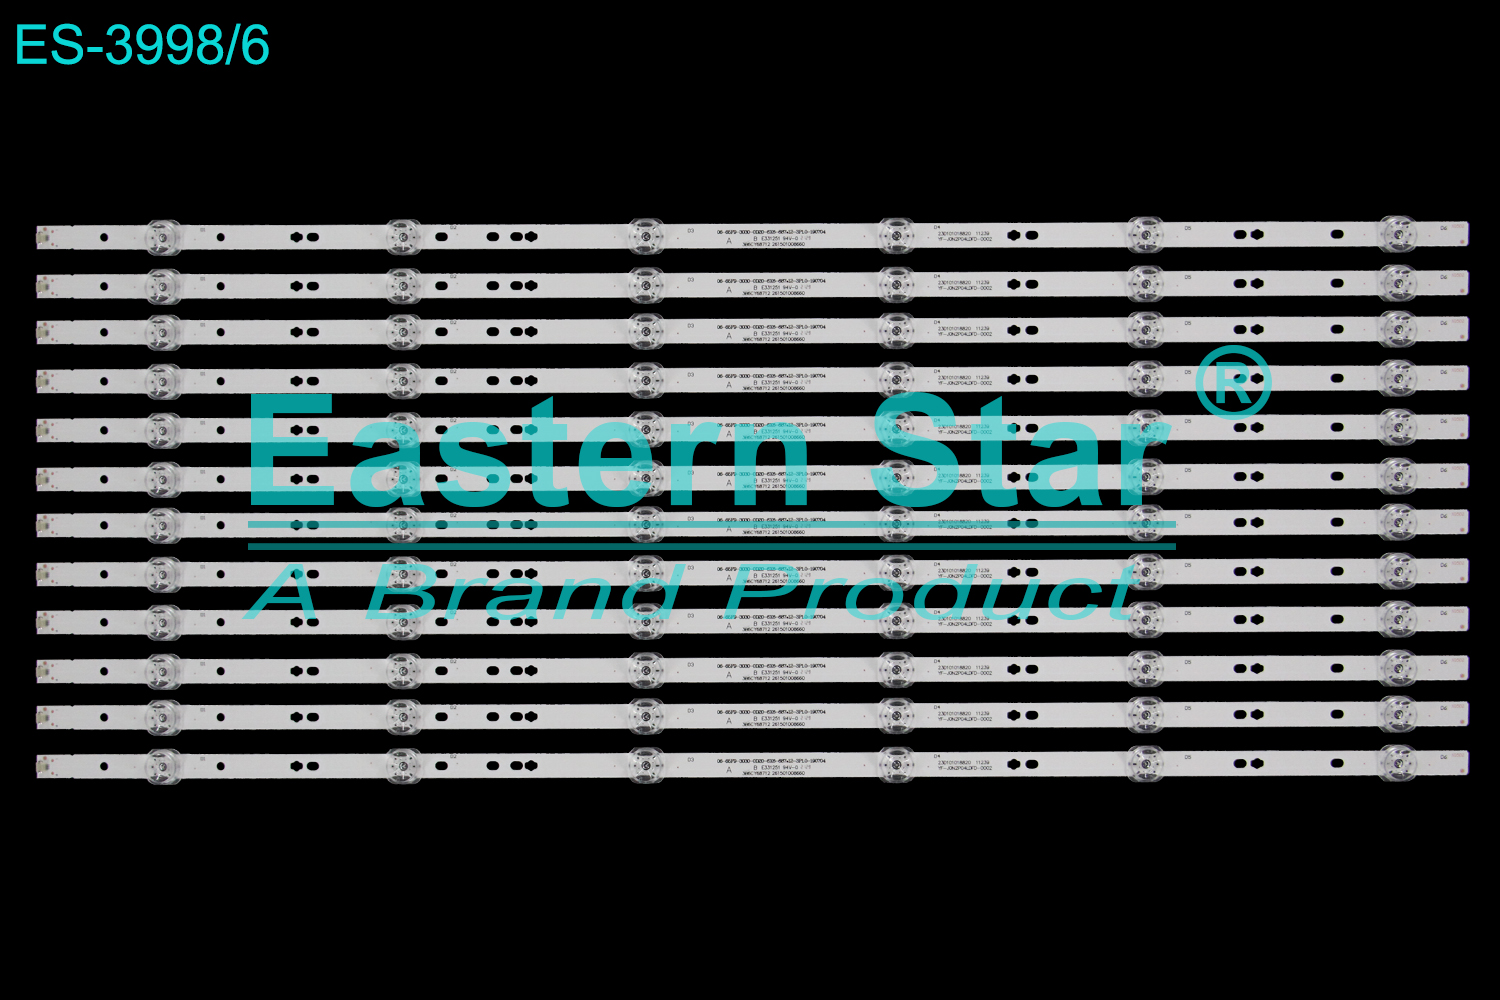 ES-3998 LED TV Backlight use for 65" Haier  65R3 06-65F9-3030-0D20-6x6-687*12-3P1.0-190704  3B6CY68712 261501008660  23D101018820 11239  YF-JON2P04LDFD-0002 LED STRIP(12)